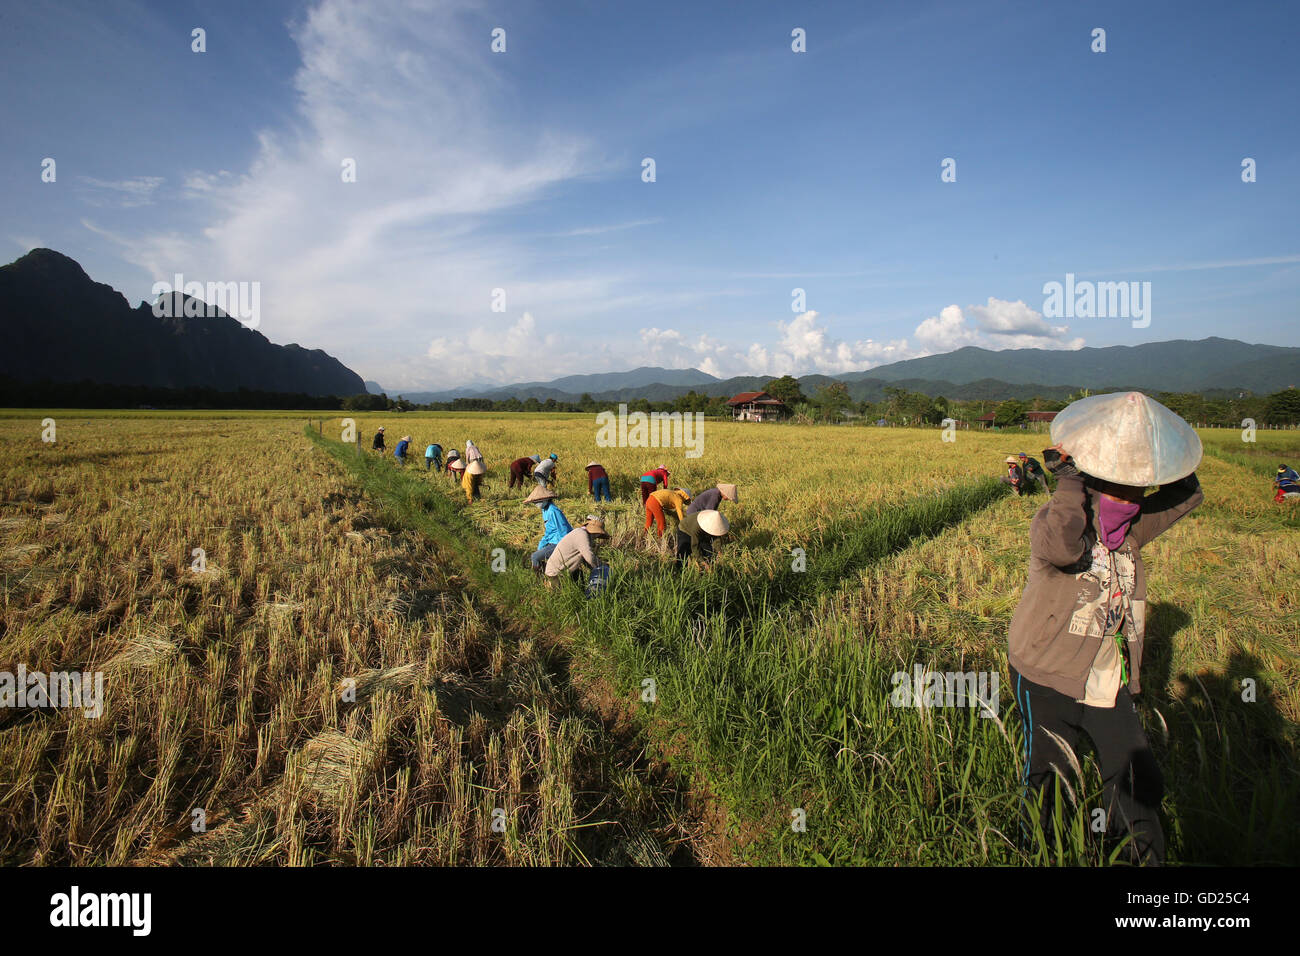 Rizières avec une vue imprenable sur la montagne et les agriculteurs chute en arrière de la récolte du riz, Van Vieng, province de Vientiane, Laos, Indochine, Asie Banque D'Images